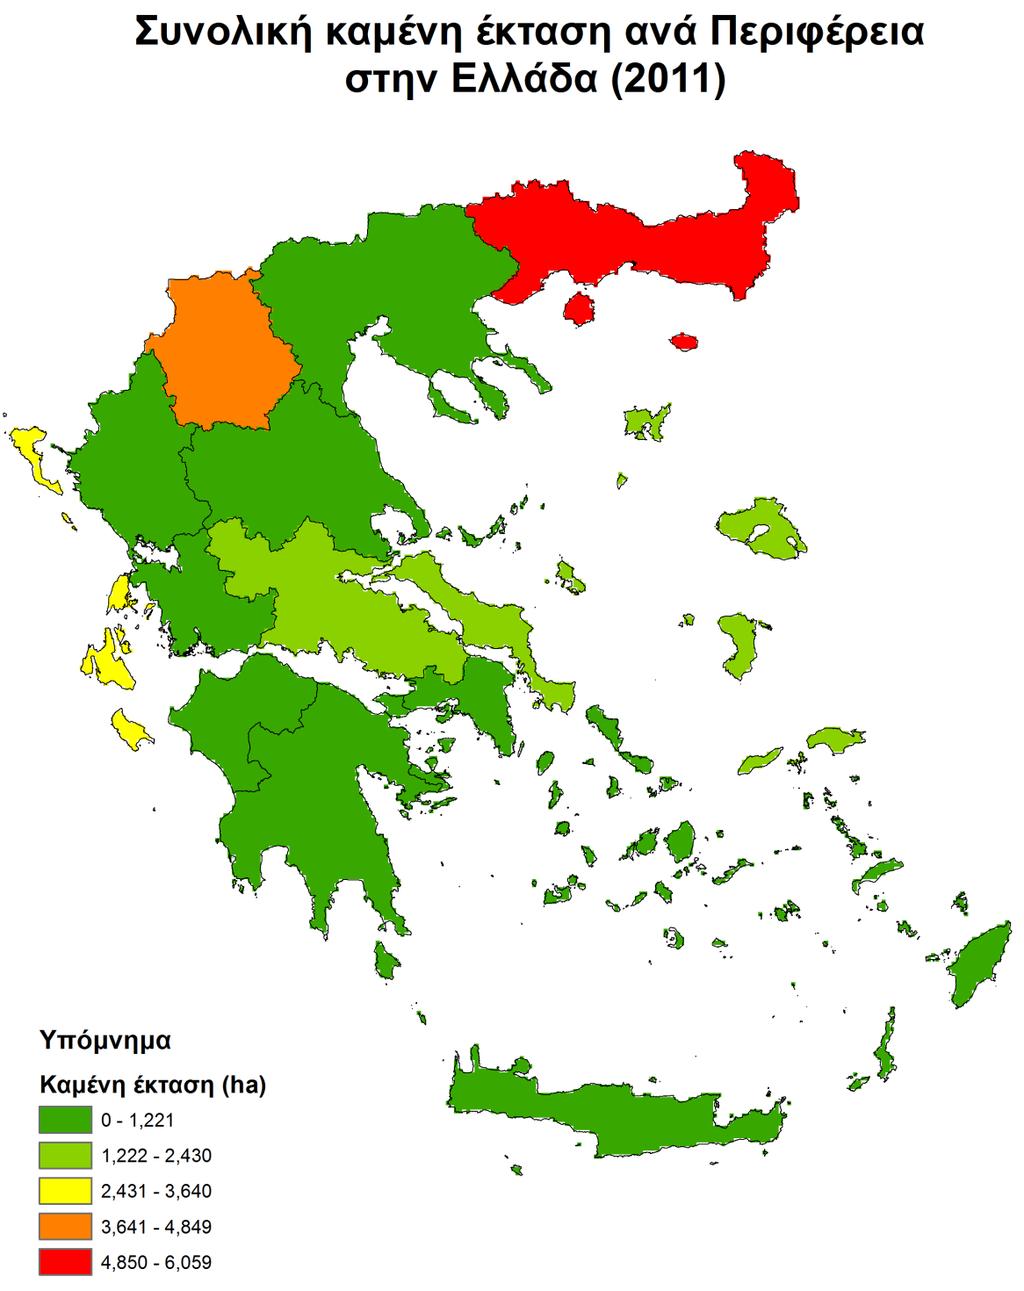 Σχήμα 4.2.9 Καμένες εκτάσεις ανά Περιφέρεια στην Ελλάδα 2011 Όπως φαίνεται στον Πίνακα 4.2.17, οι Περιφέρειες με τις περισσότερες καμένες εκτάσεις ήταν η Πελοπόννησος και η Ανατολική Μακεδονία και Θράκη το 2007 και 2011 αντίστοιχα.